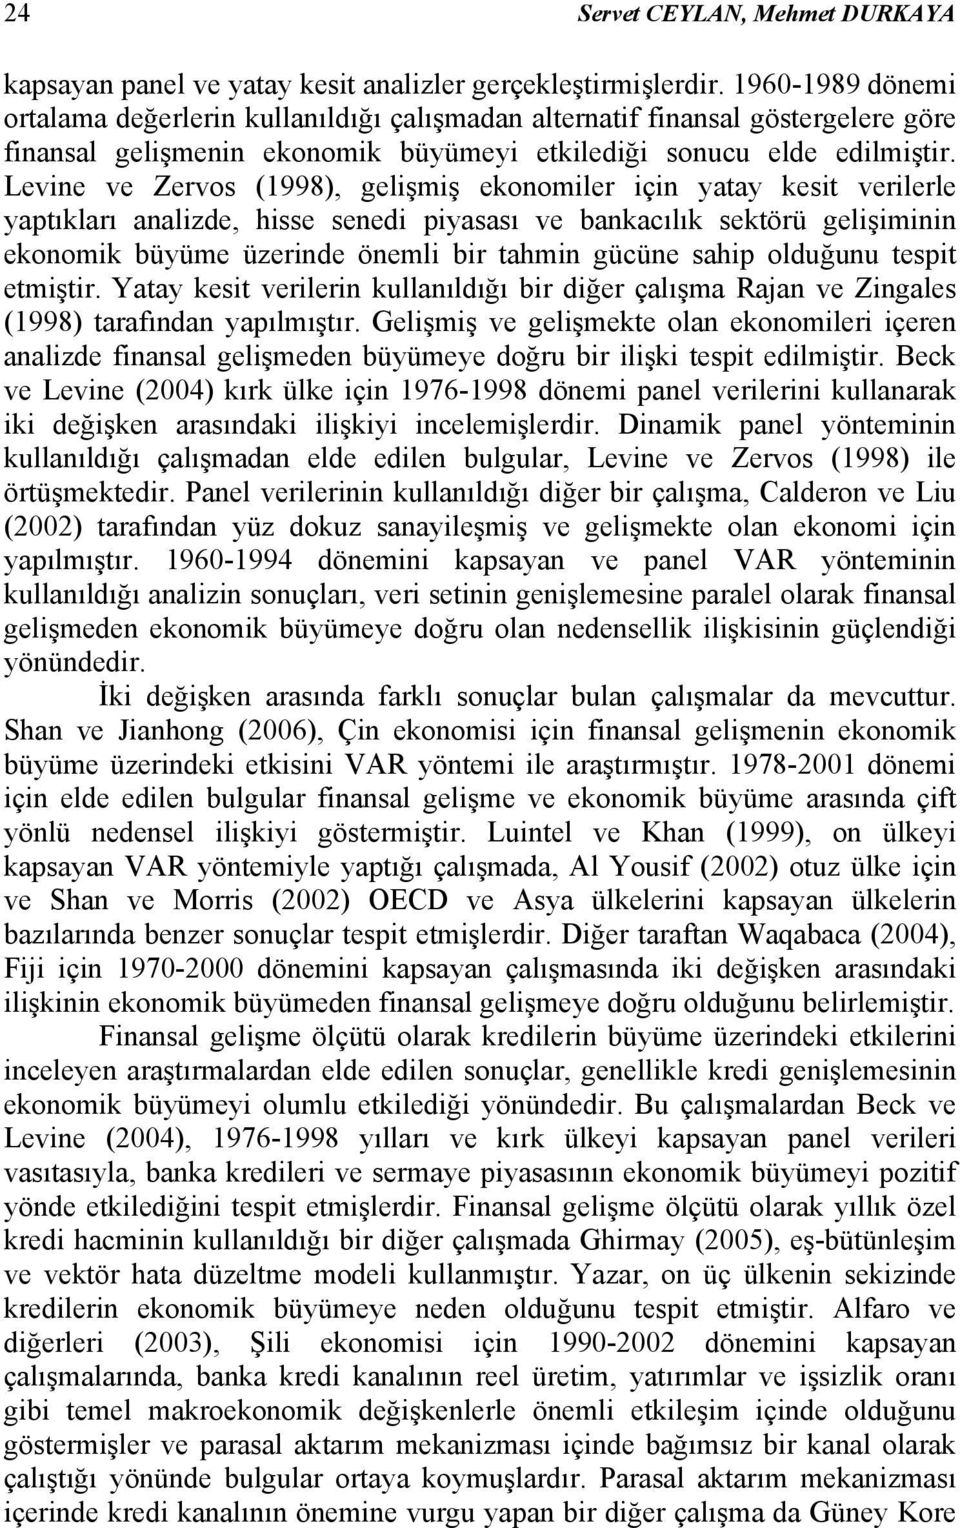 Levne ve Zervos (998), gelşmş ekonomler çn yaay kes verlerle yapıkları analzde, hsse sened pyasası ve bankacılık sekörü gelşmnn ekonomk büyüme üzernde öneml br ahmn gücüne sahp olduğunu esp emşr.